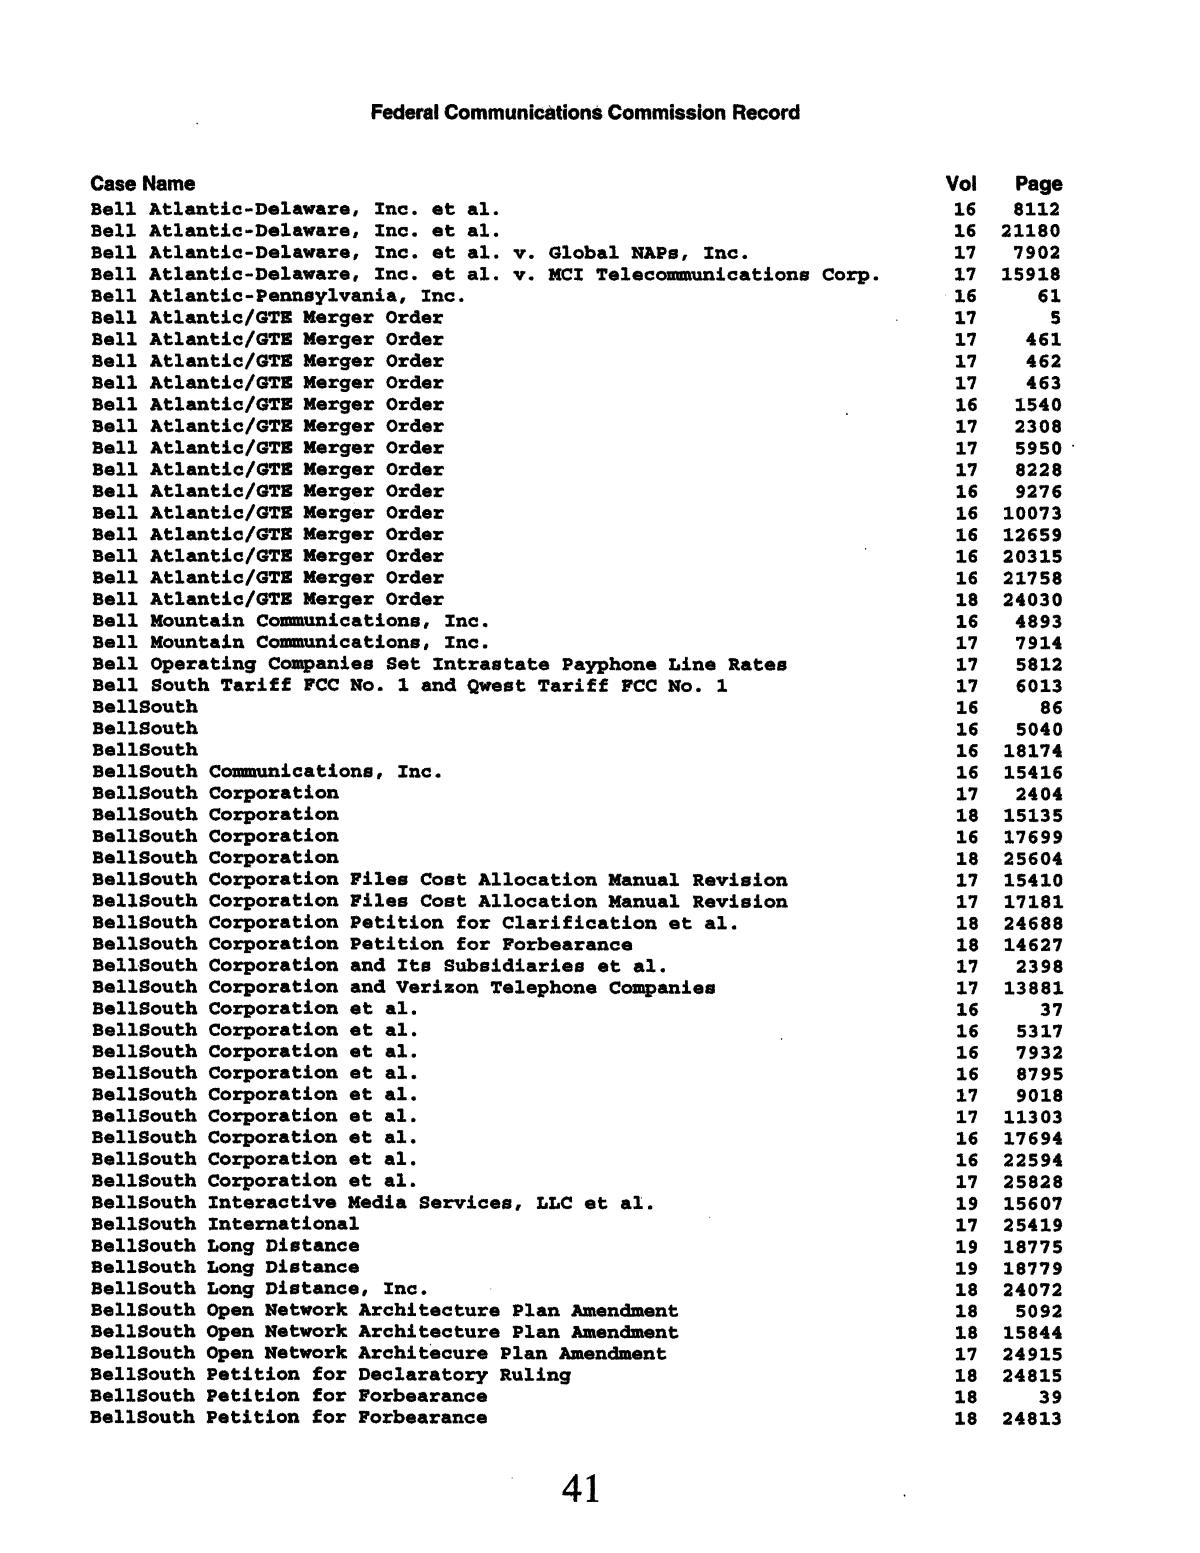 FCC Record, Cumulative Index, Volumes 16-19
                                                
                                                    41
                                                